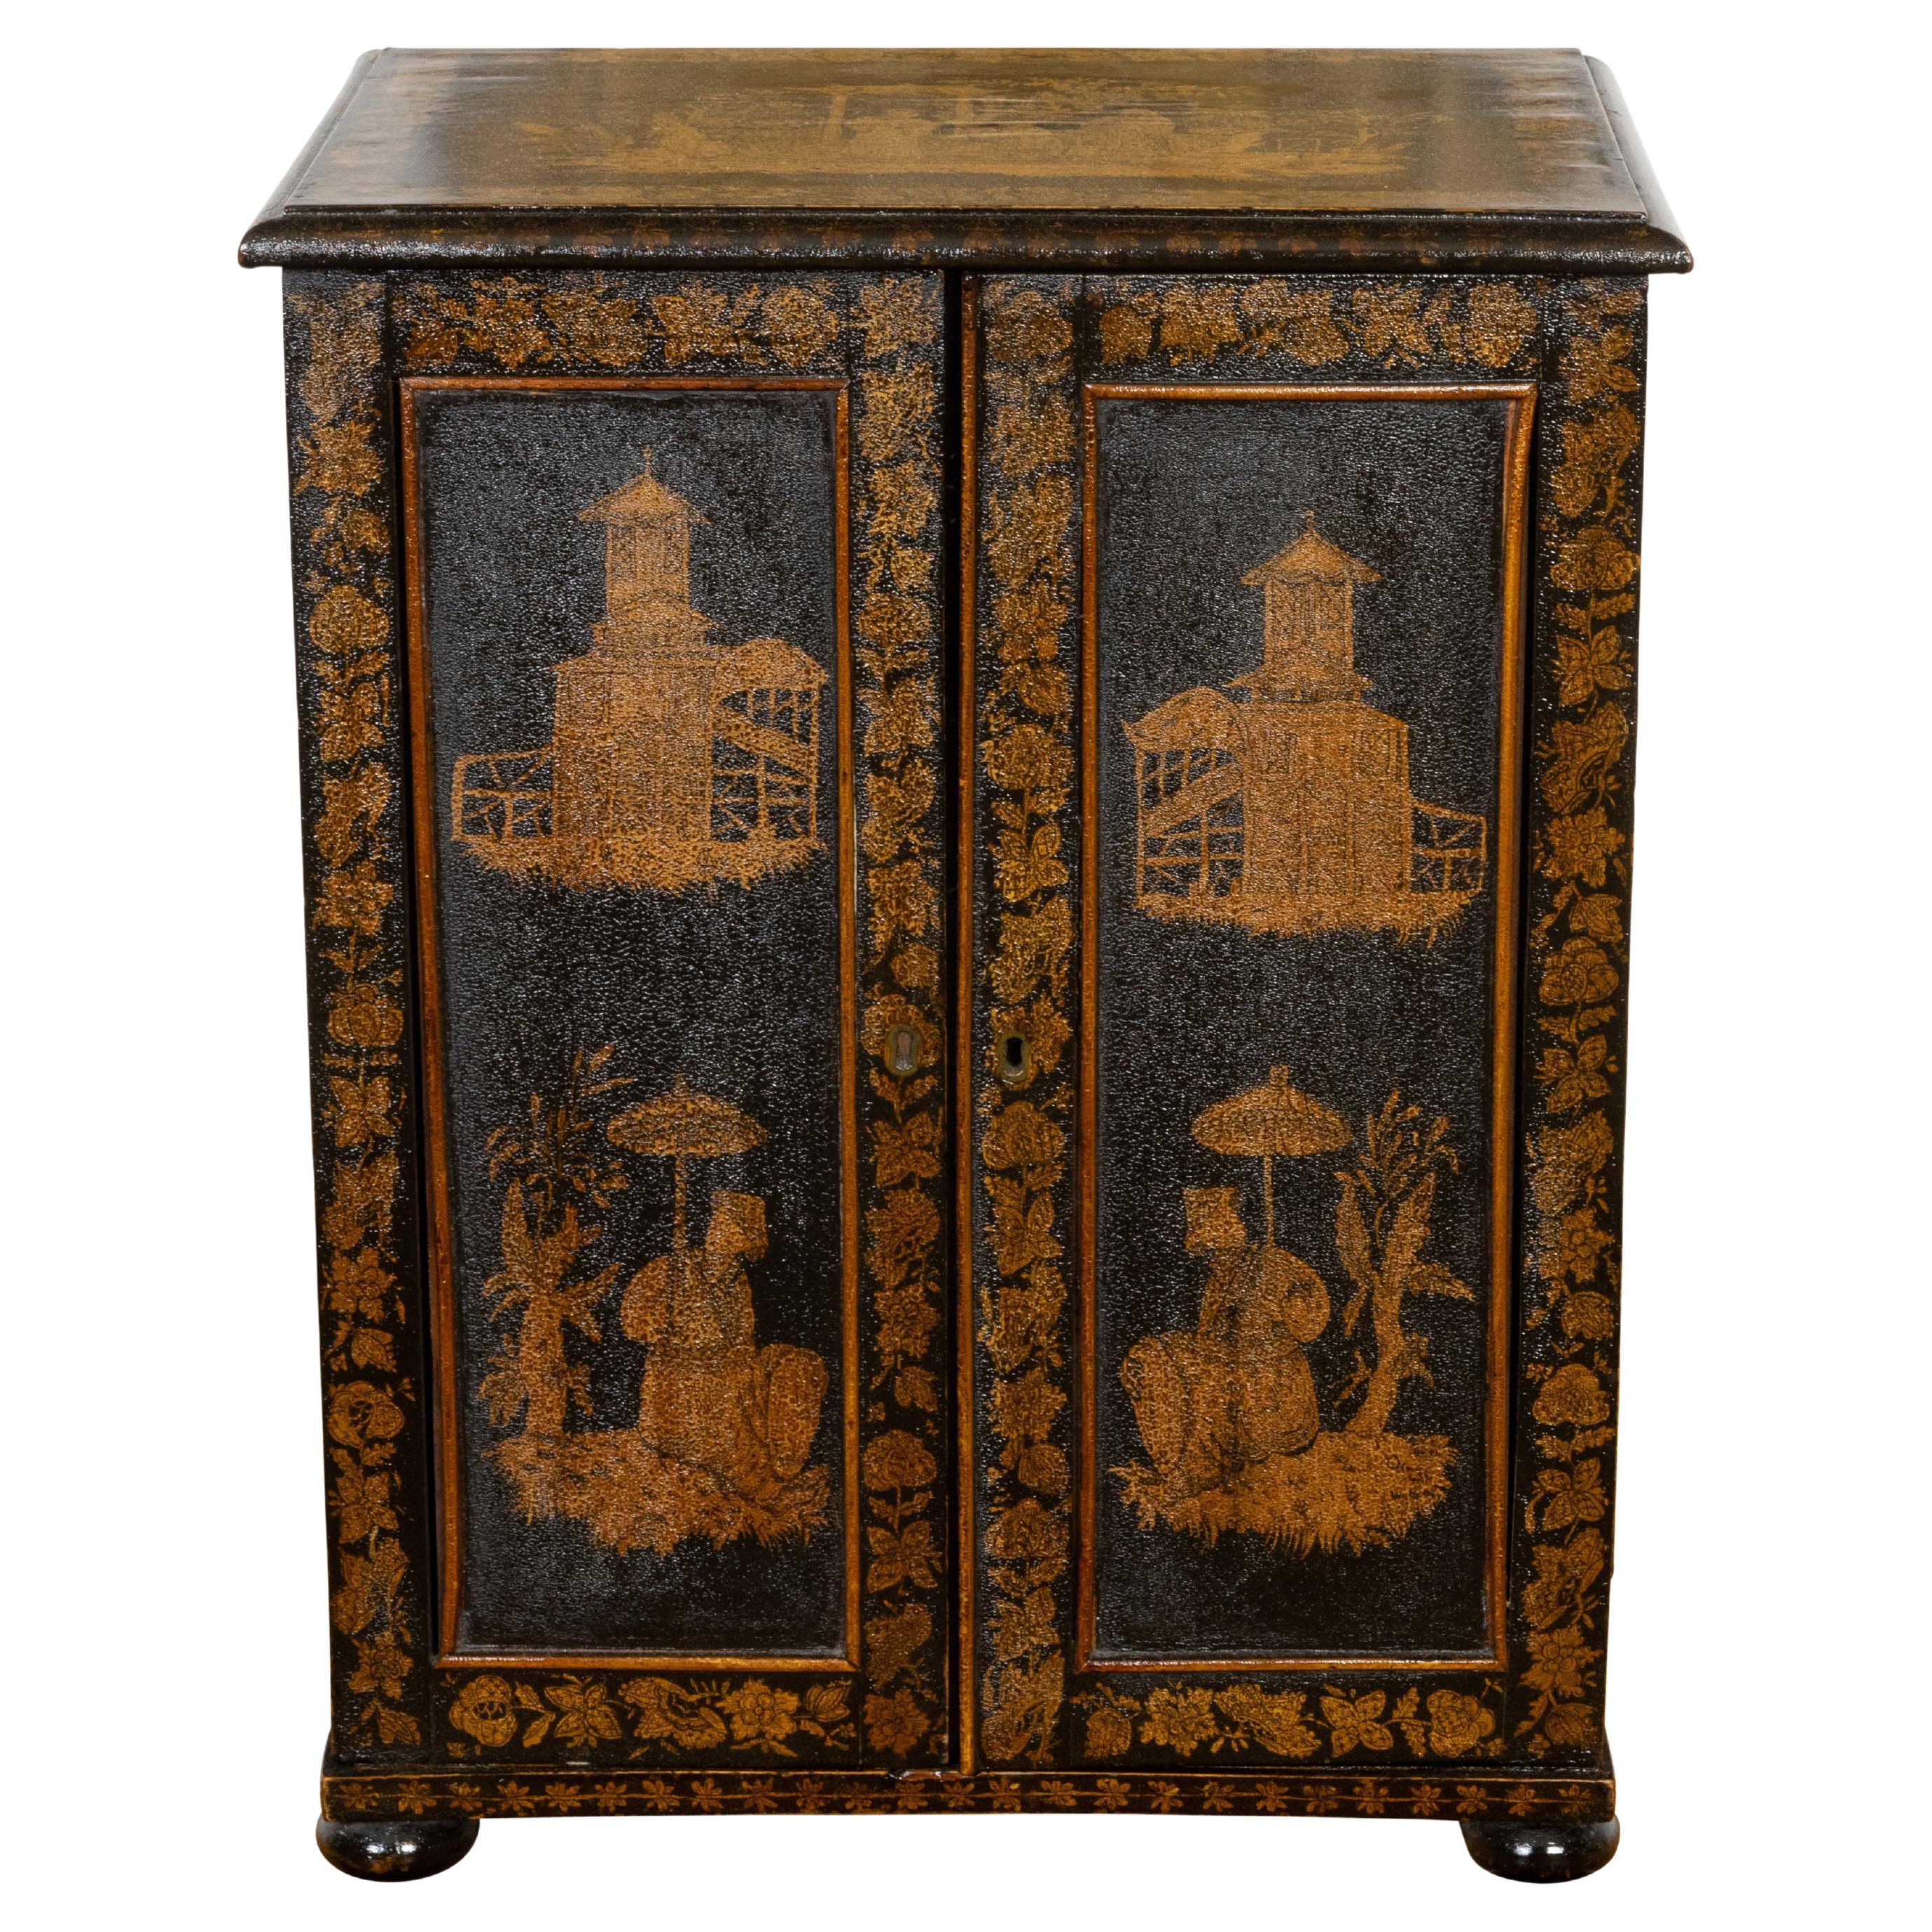 Englischer Chinoiserie-Schrank aus dem 19. Jahrhundert mit sieben Schubladen in Schwarz und Gold